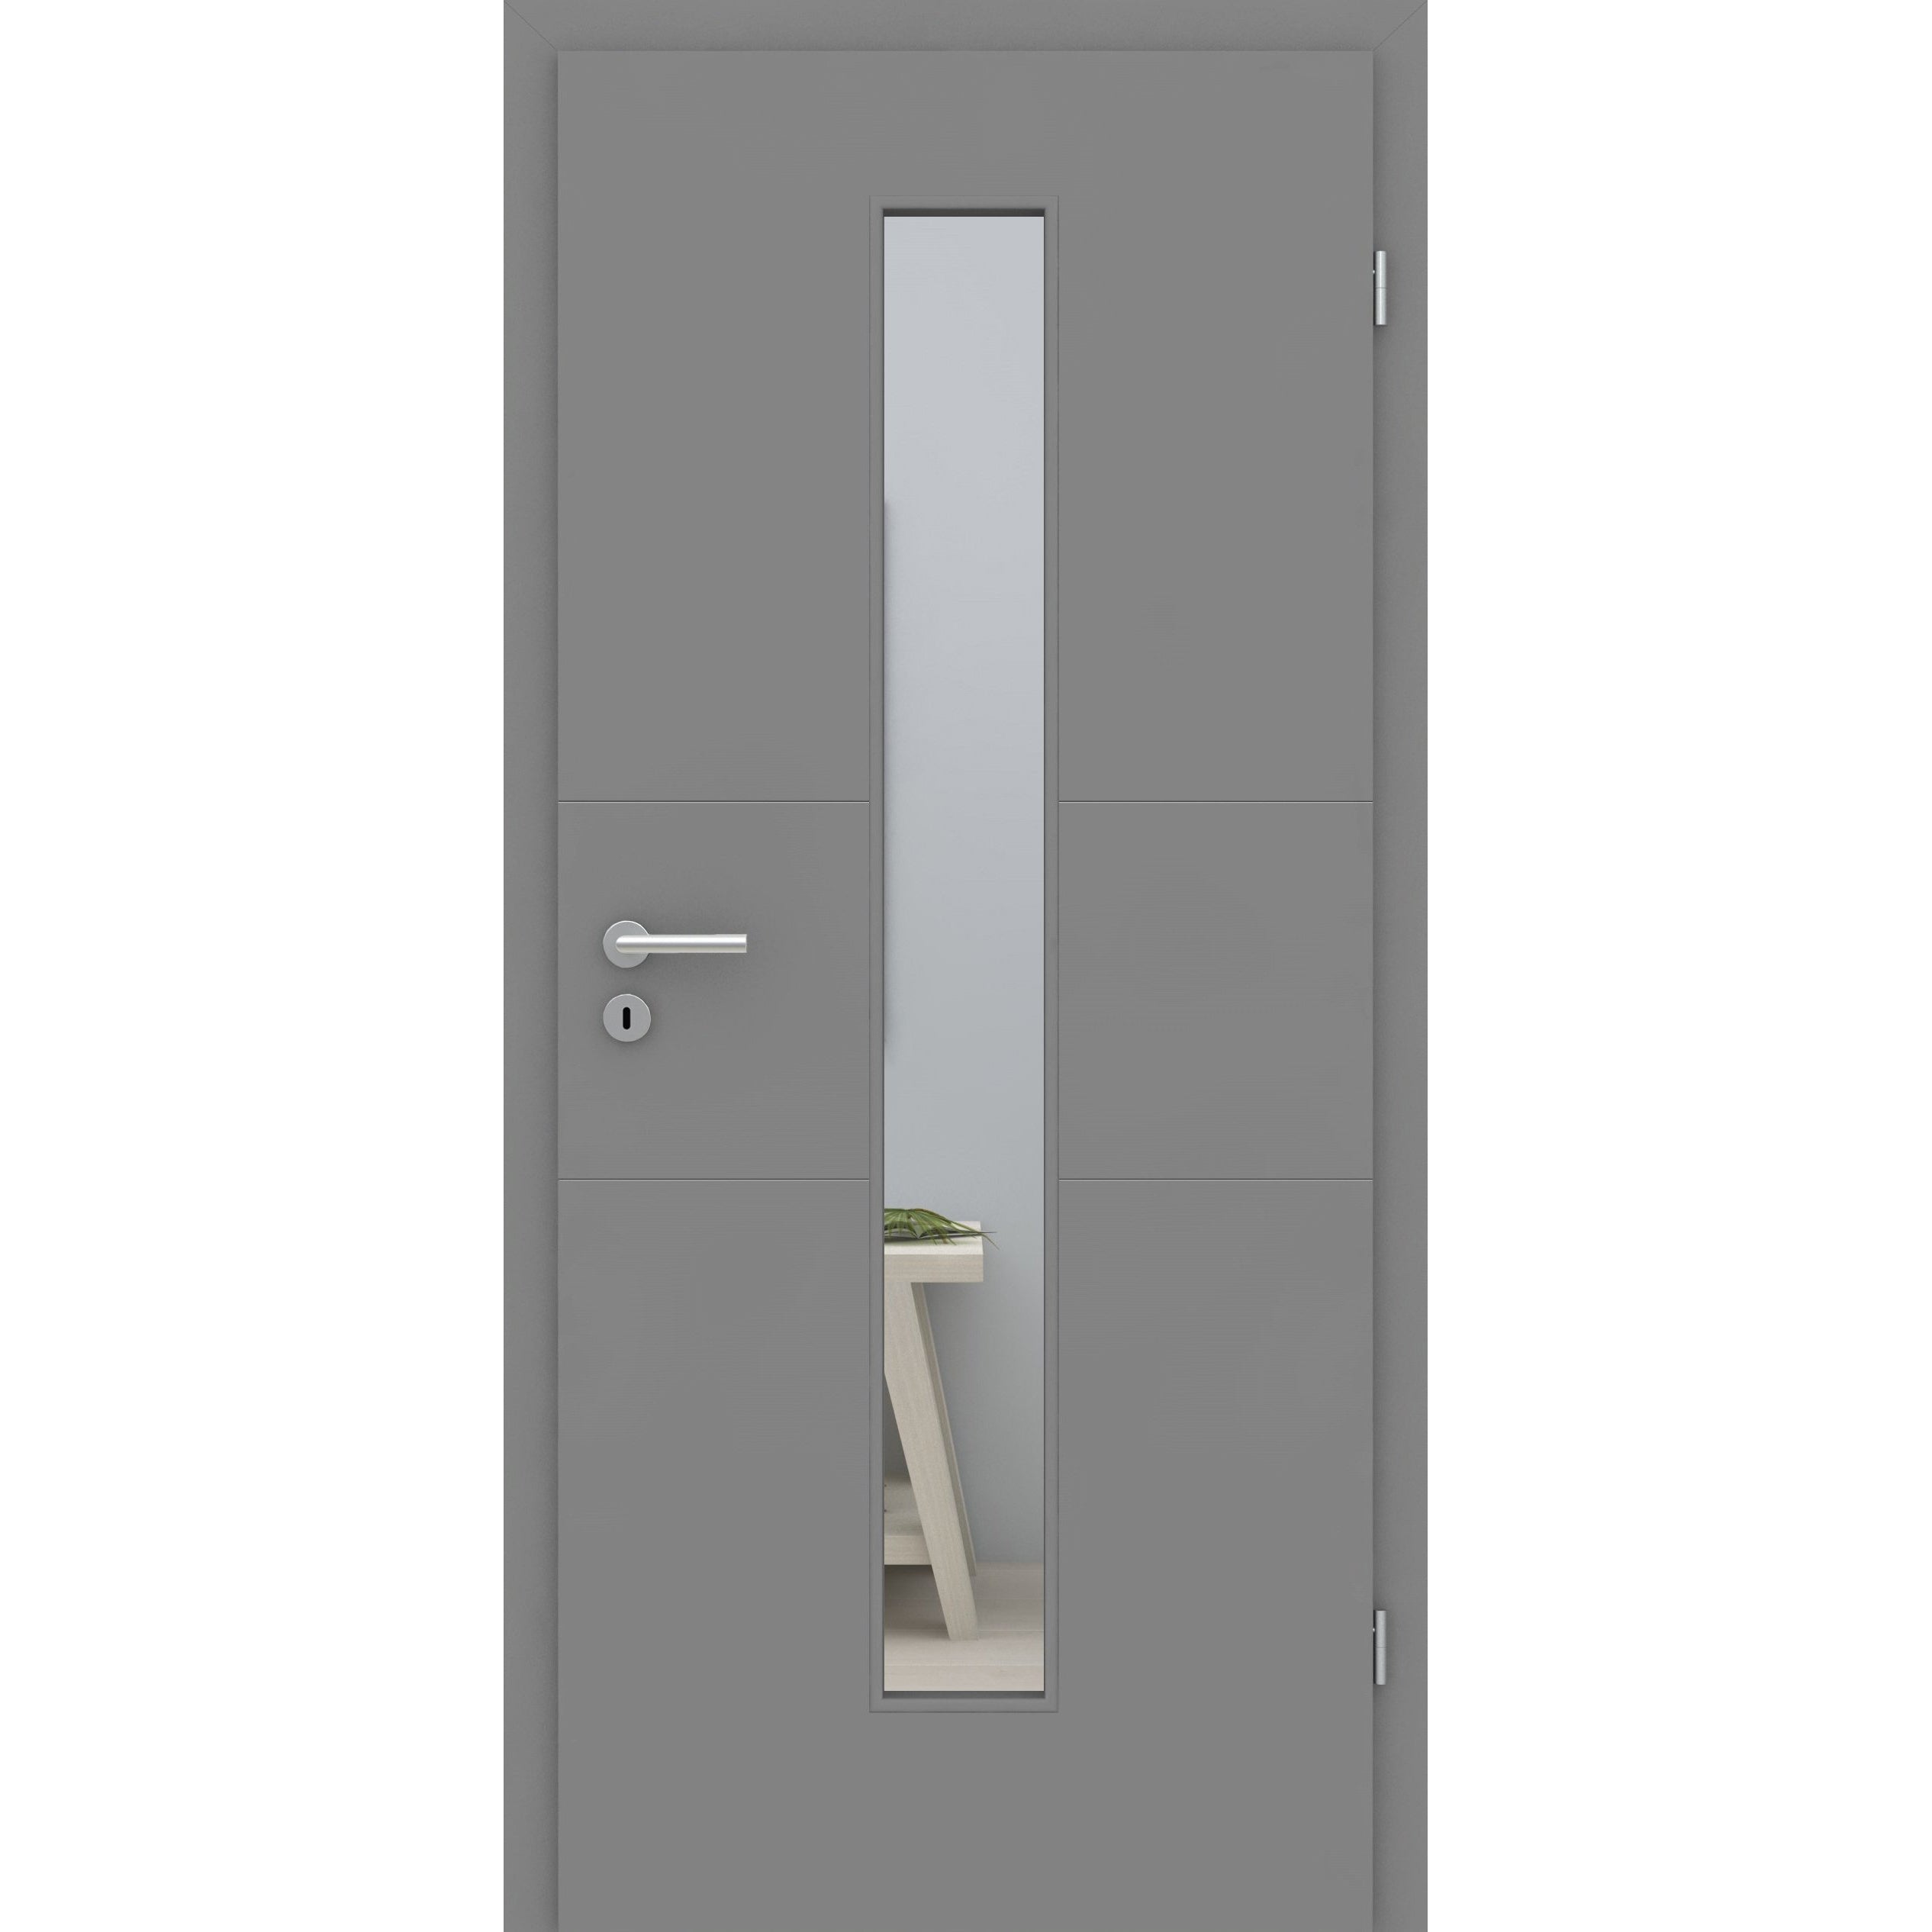 Zimmertür mit Lichtausschnitt grau 2 Rillen quer Designkante - Modell Designtür Q27LAM